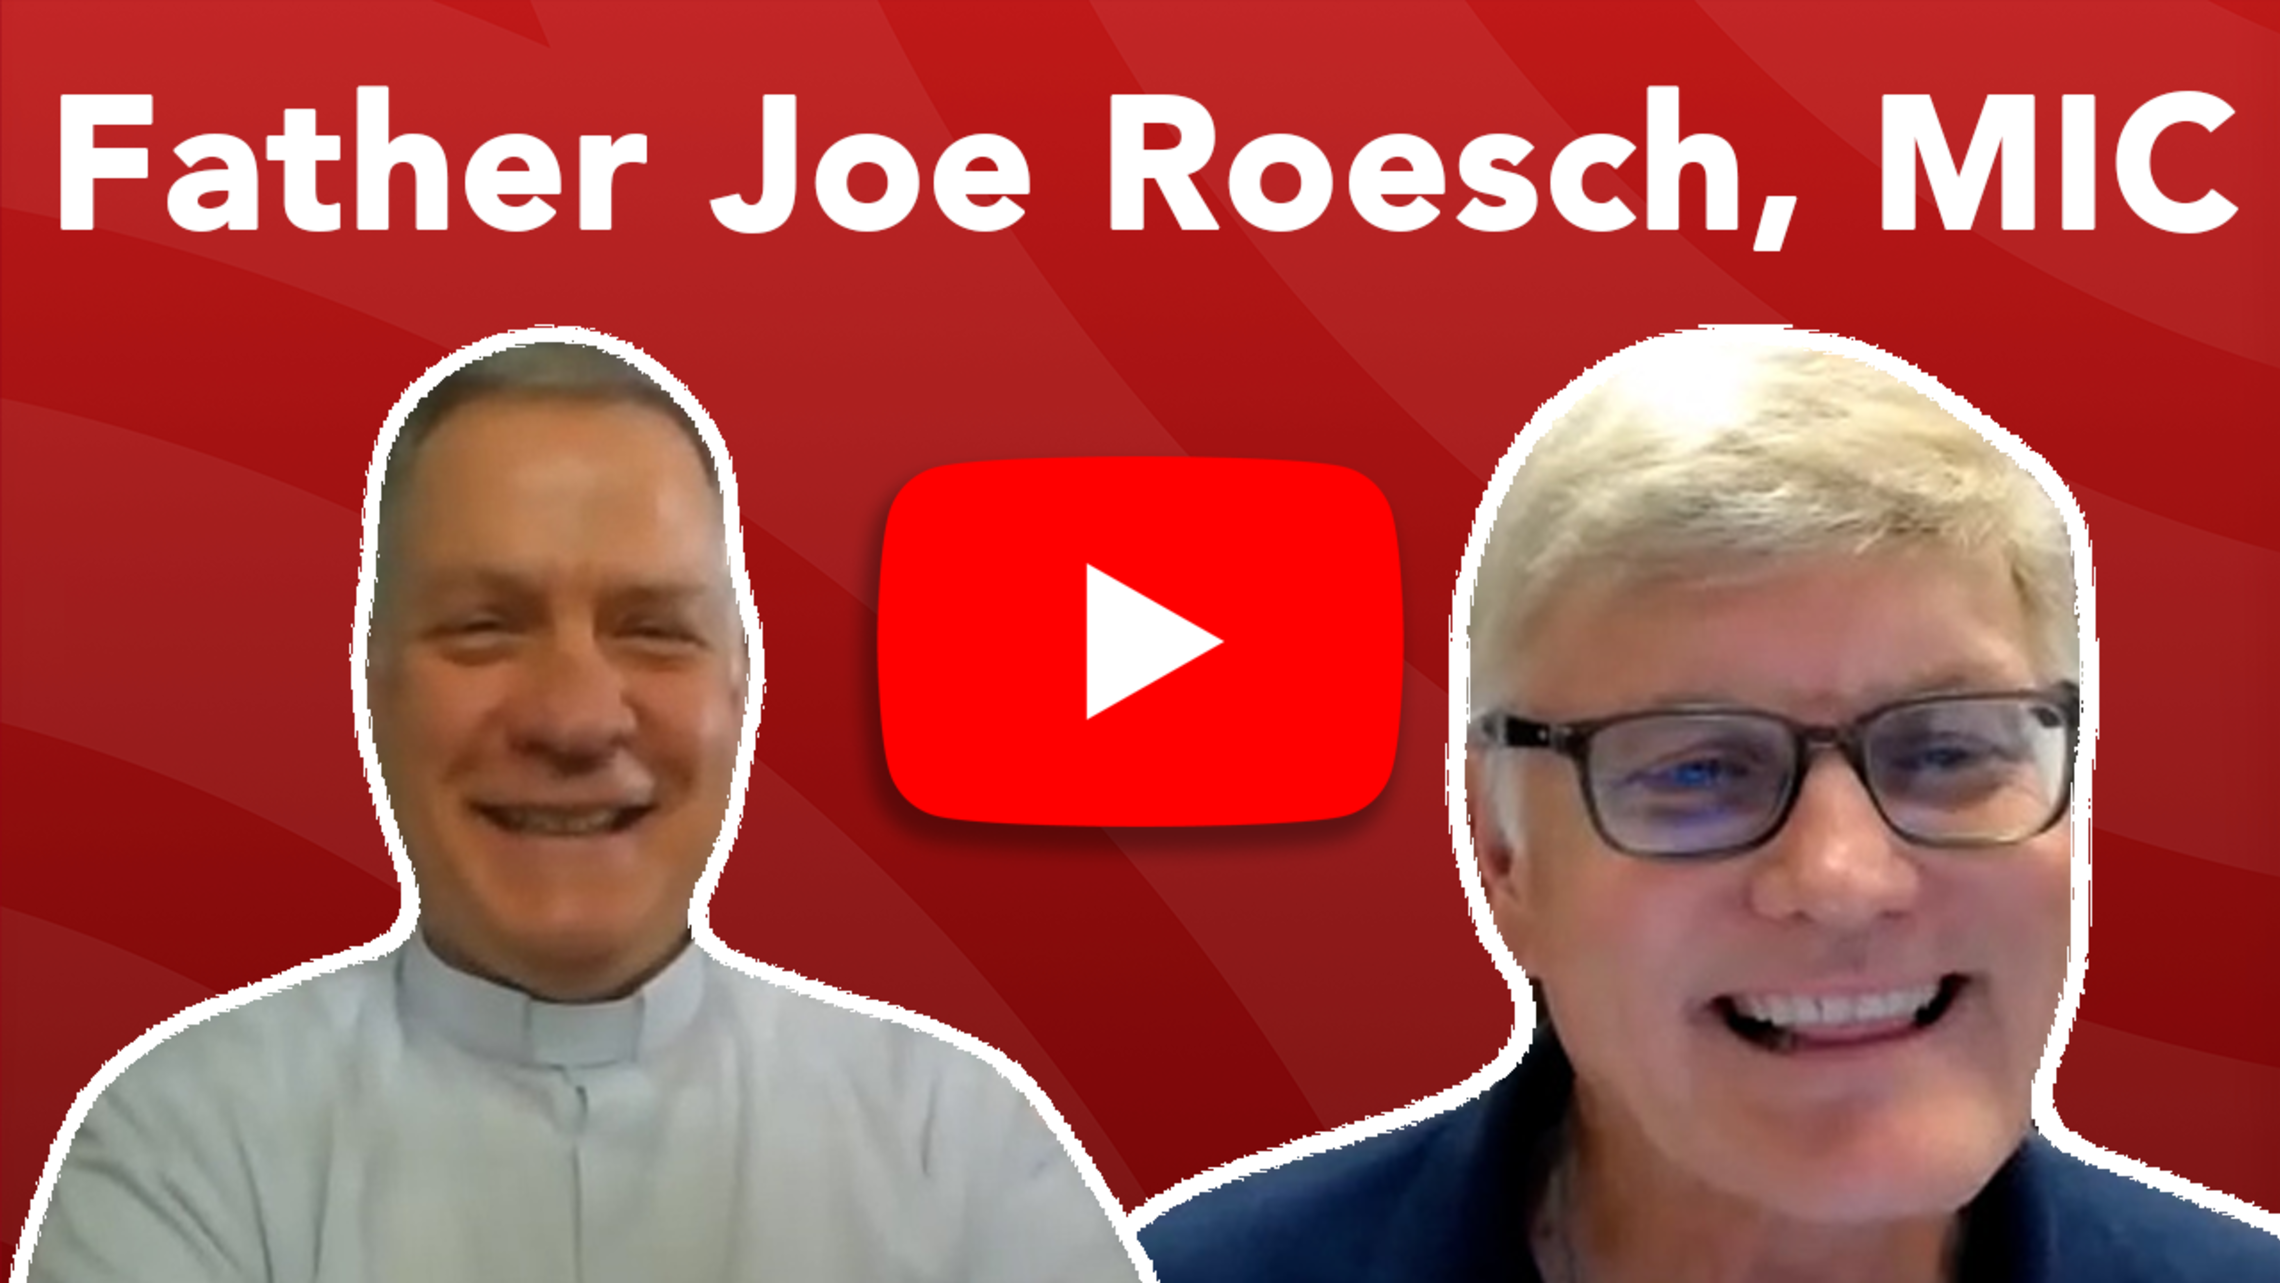 Father Joe Roesch Mic Tn Website